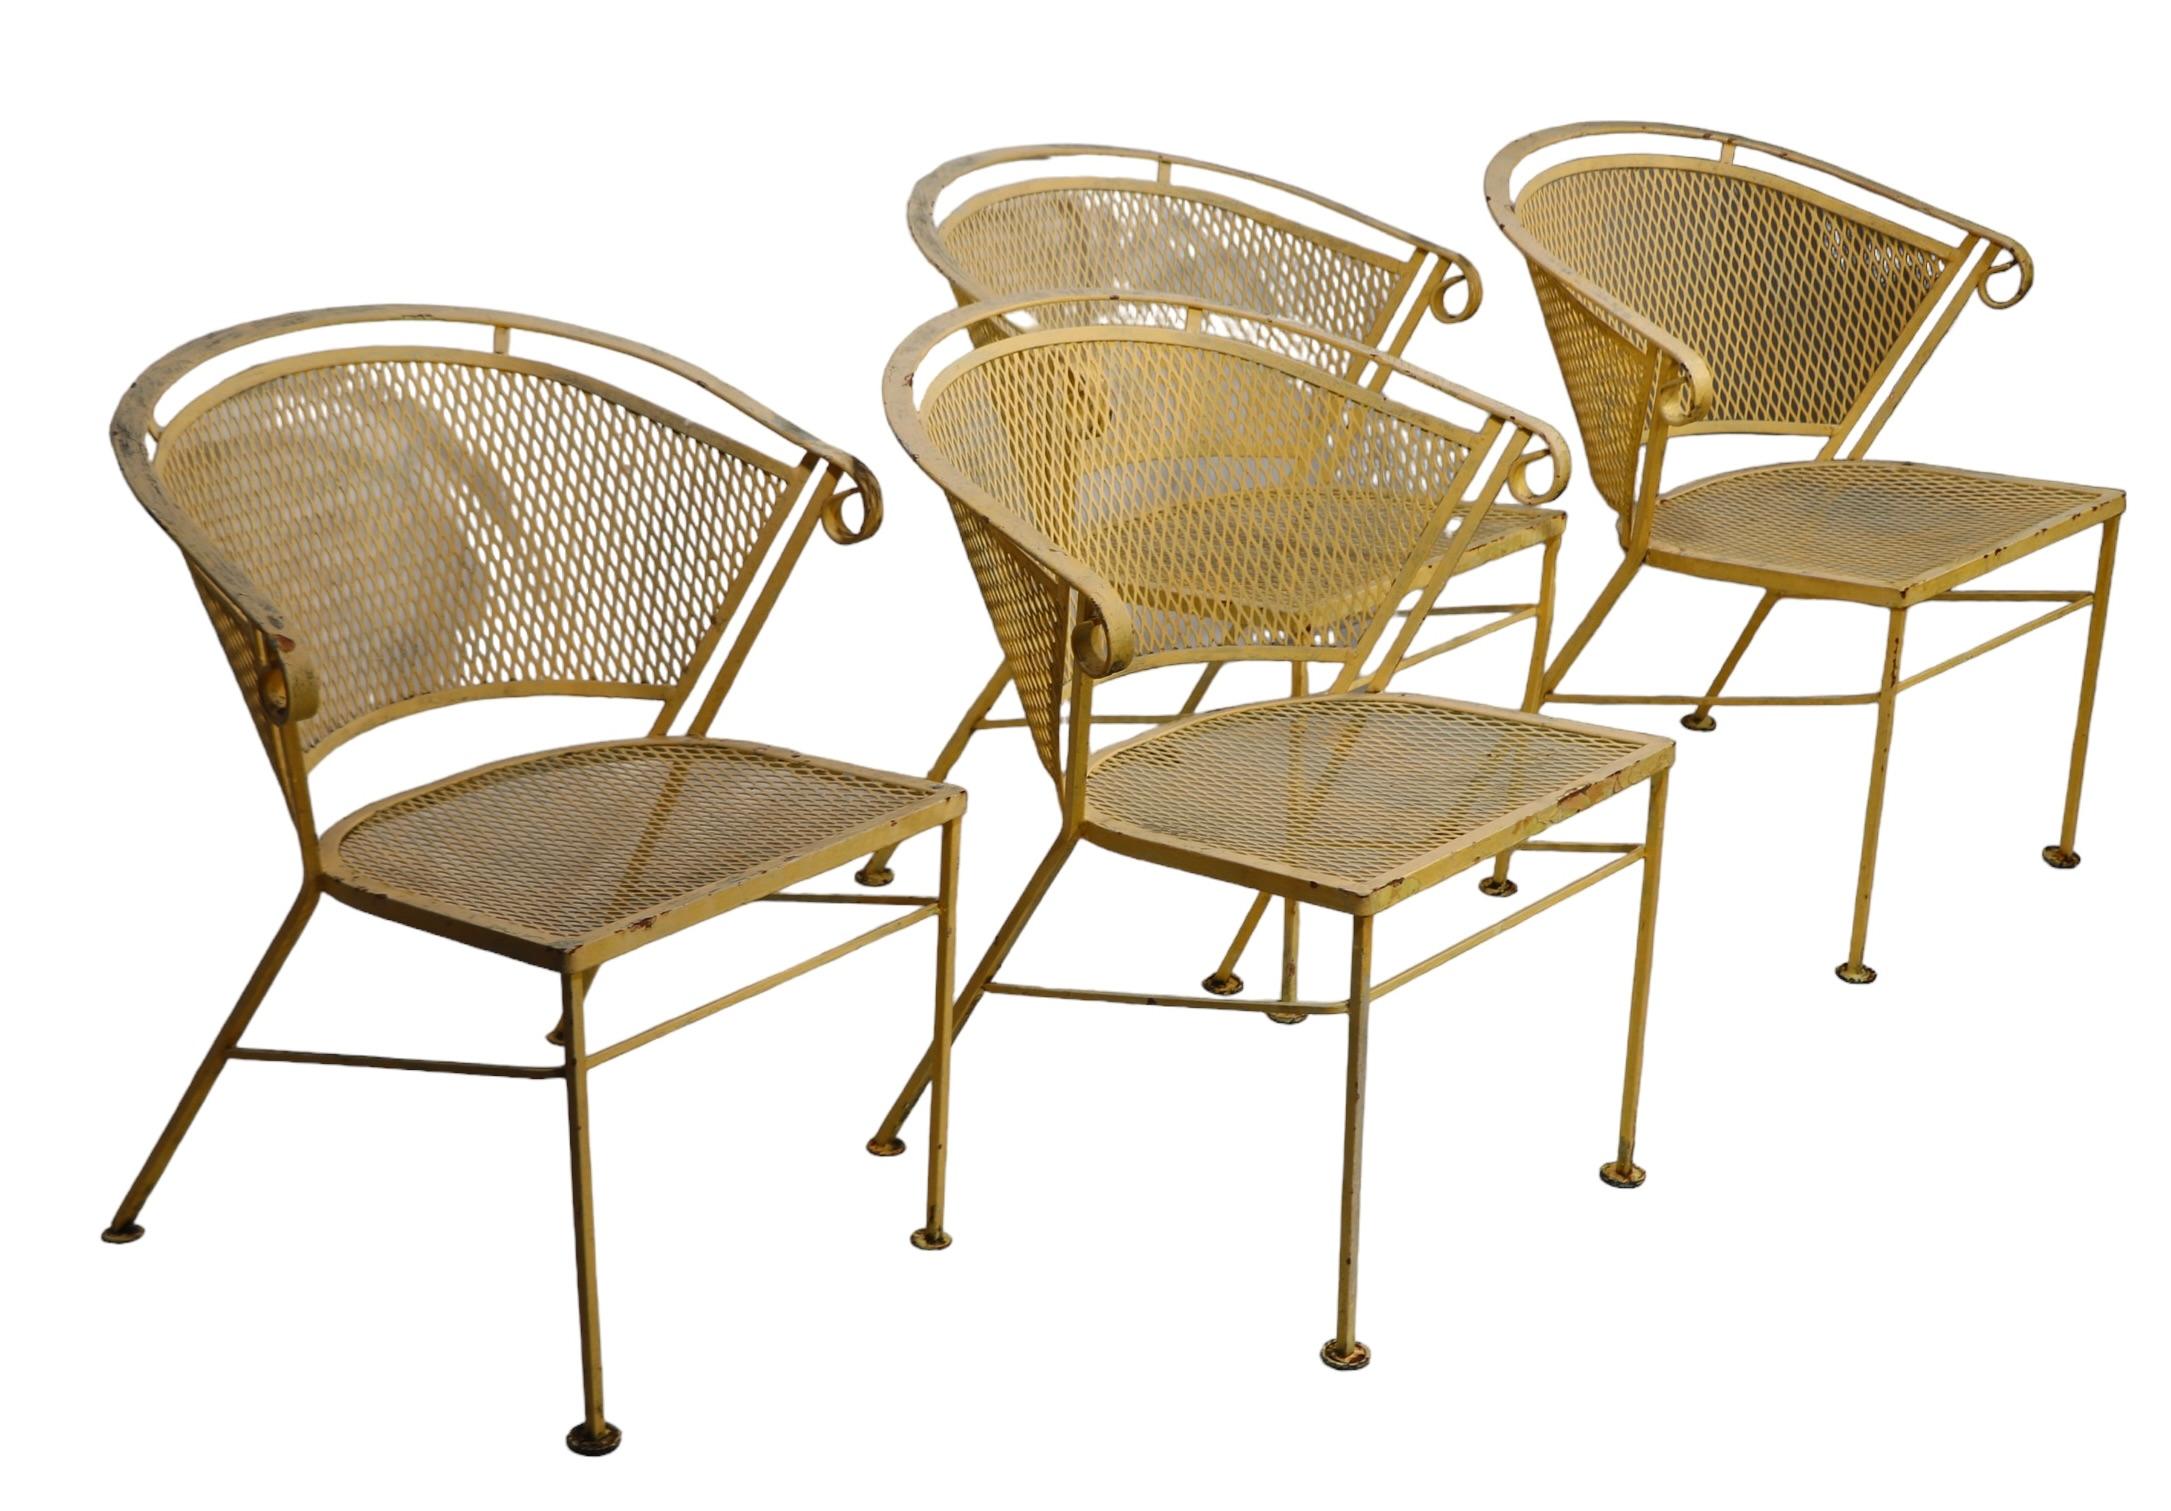 Ensemble de quatre chaises de jardin, de patio et de piscine du milieu du siècle dernier, fabriquées par la Woodard Furniture Company, vers les années 1950/60. Les chaises sont toutes structurellement saines et robustes, elles sont actuellement